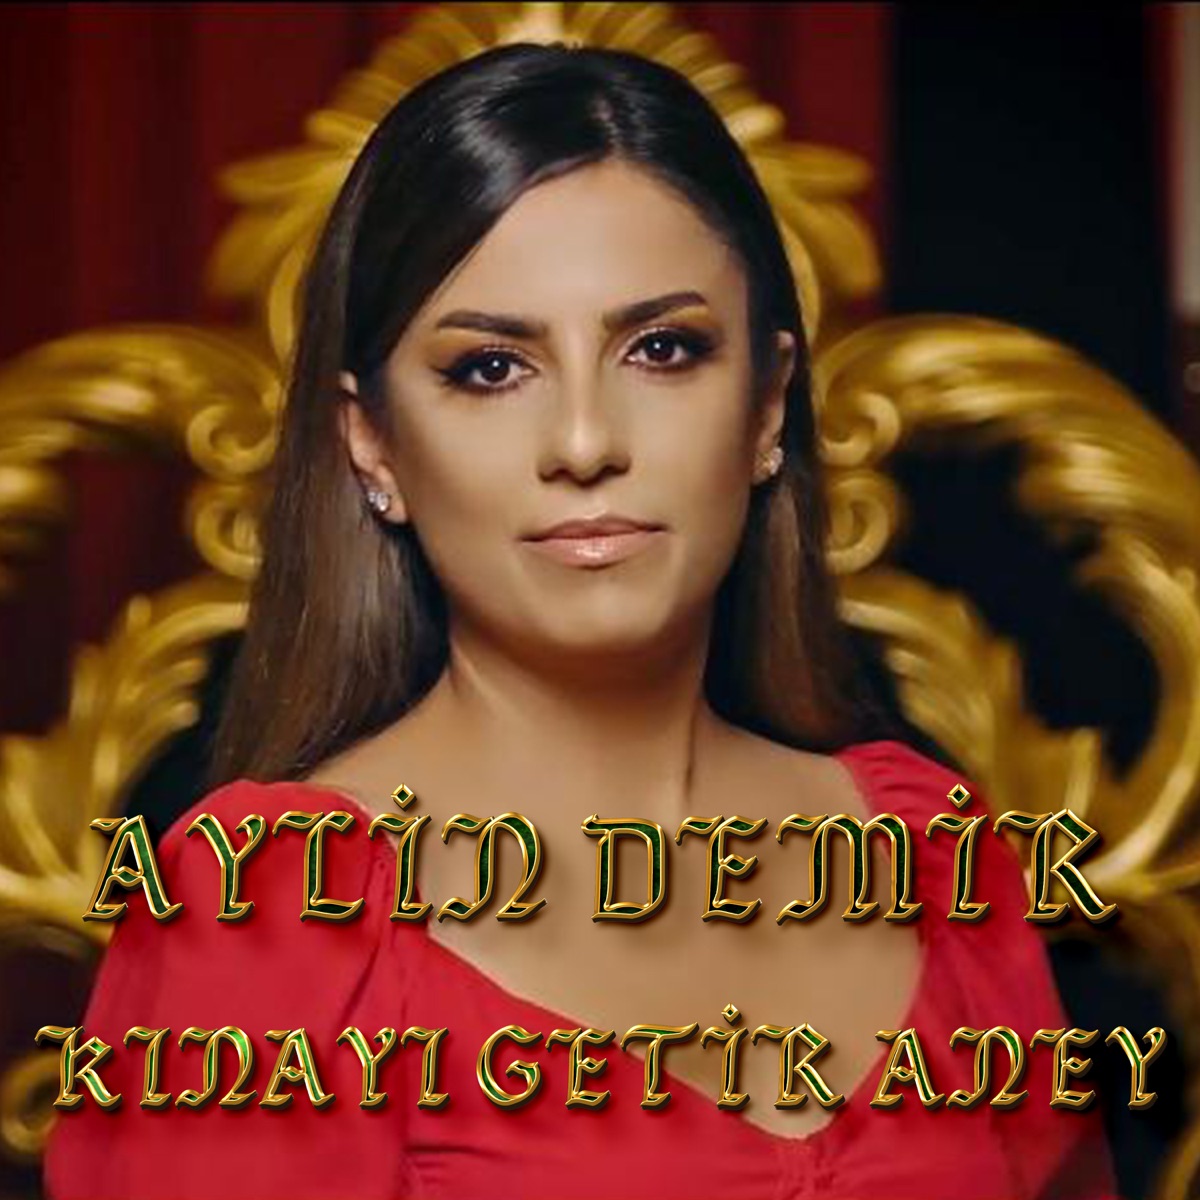 Kınayı Getir Aney - Single - Album by Aylin Demir - Apple Music